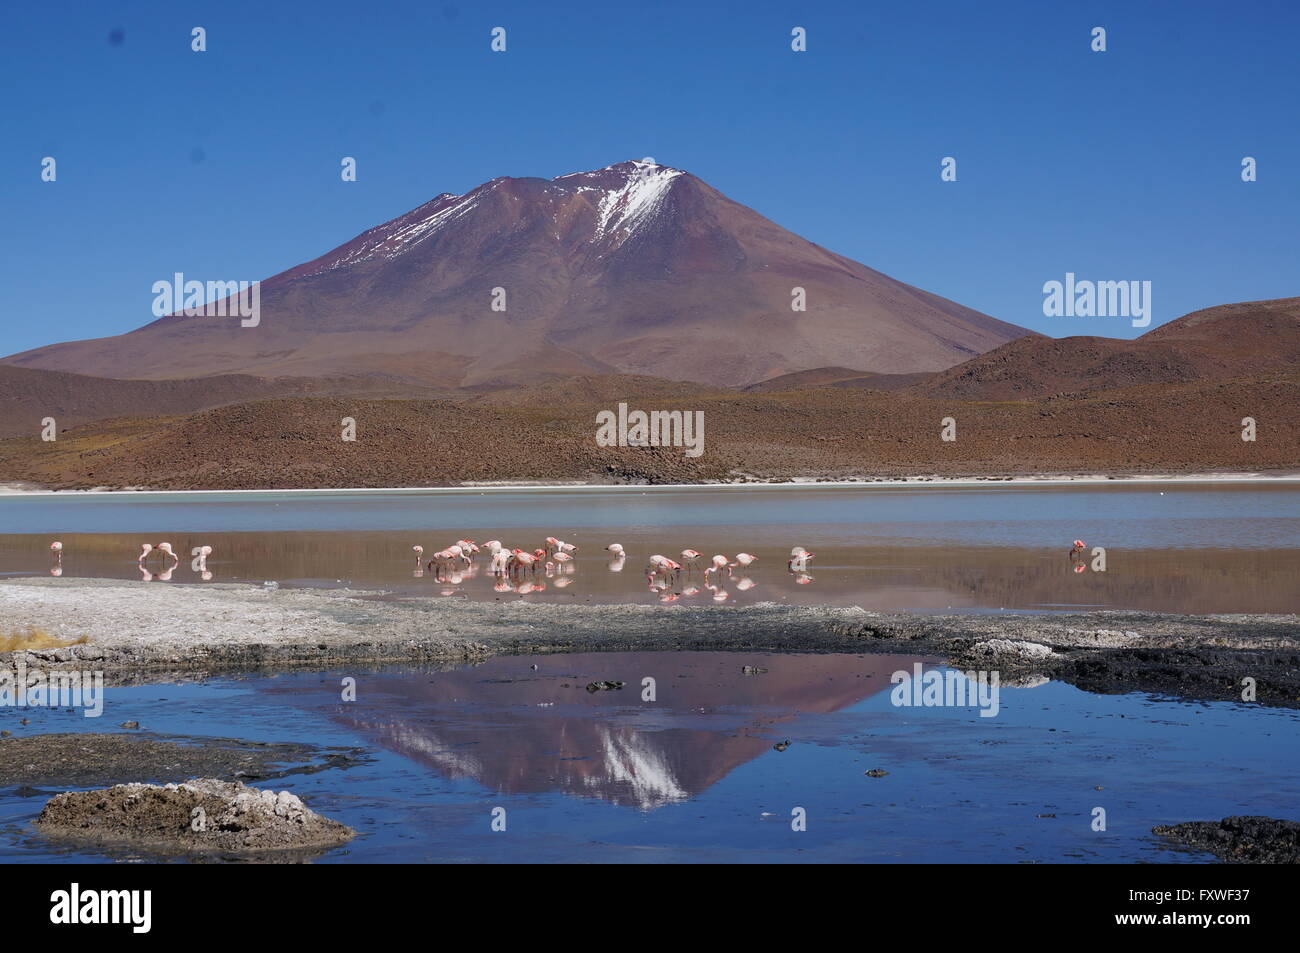 Bolivien - 21.08.2013 - Bolivien / Uyuni - Lagunes, Herde von Lamas - Sandrine Huet / Le Pictorium Stockfoto